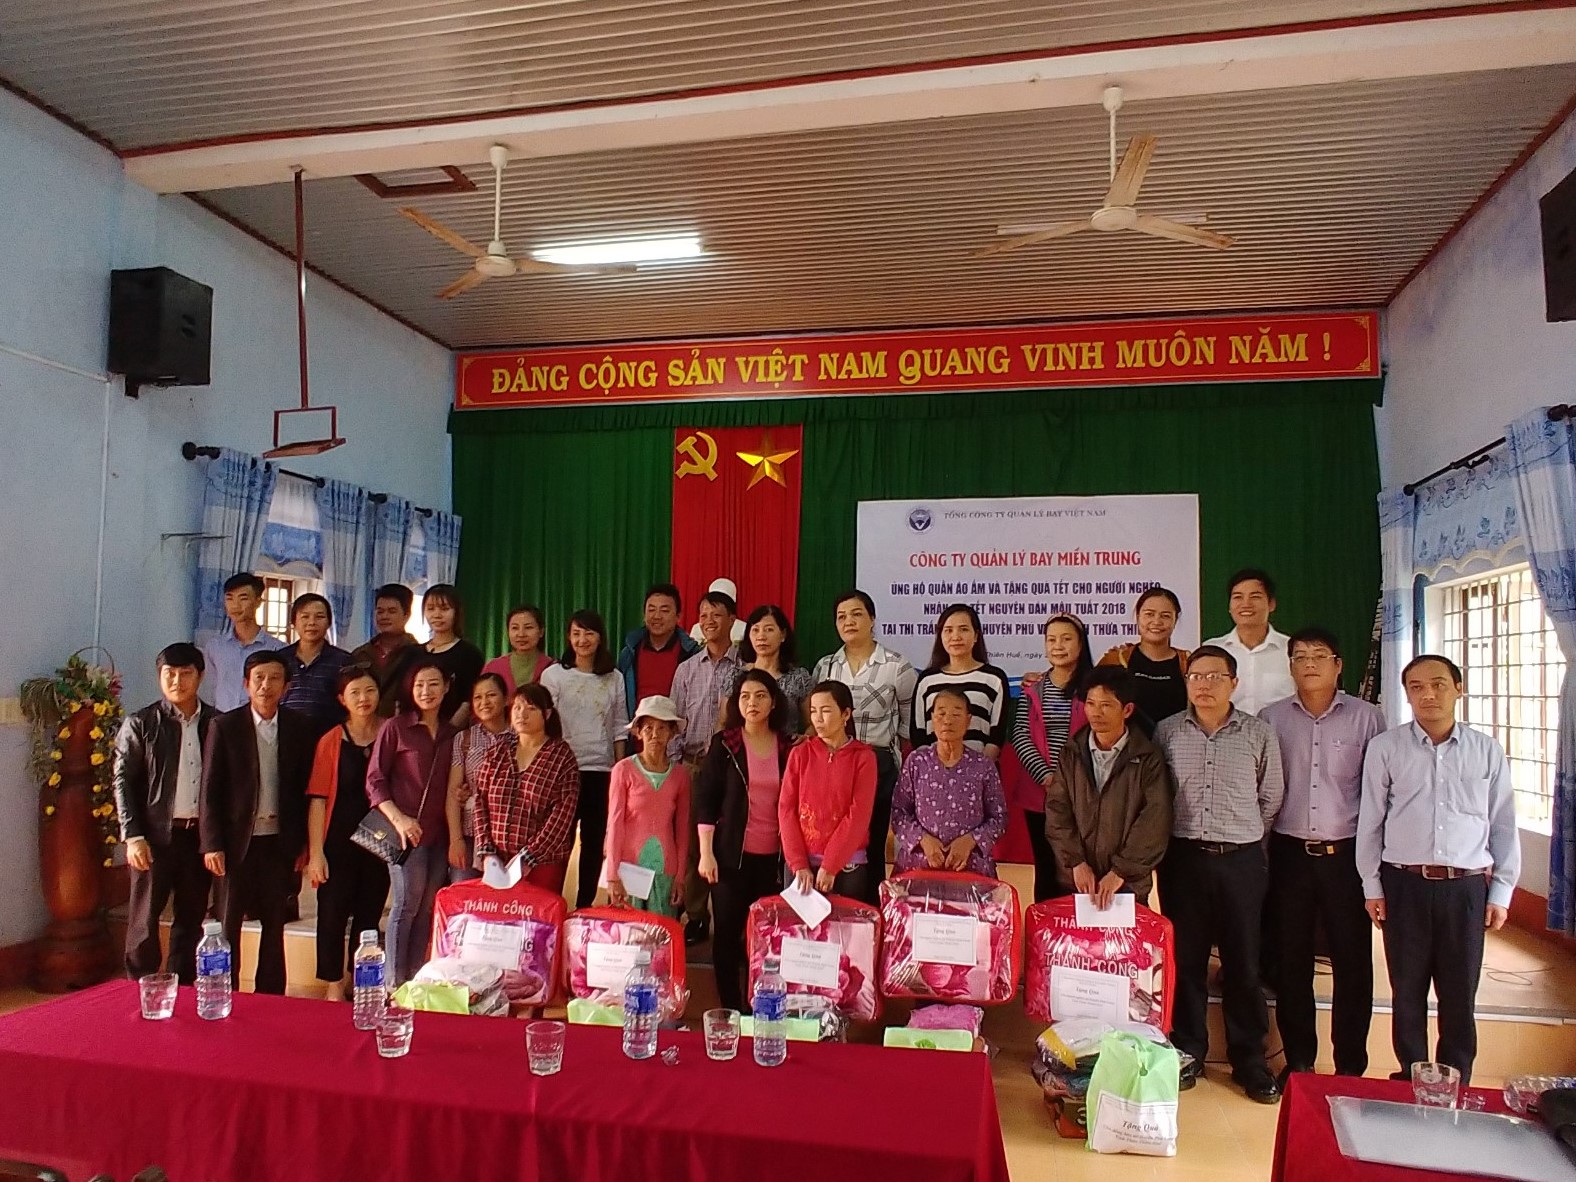 Chương trình ủng hộ quần áo ấm và tặng quà Tết cho người nghèo nhân dịp Tết Nguyên đán Mậu Tuất 2018 của Công ty Quản lý bay miền Trung